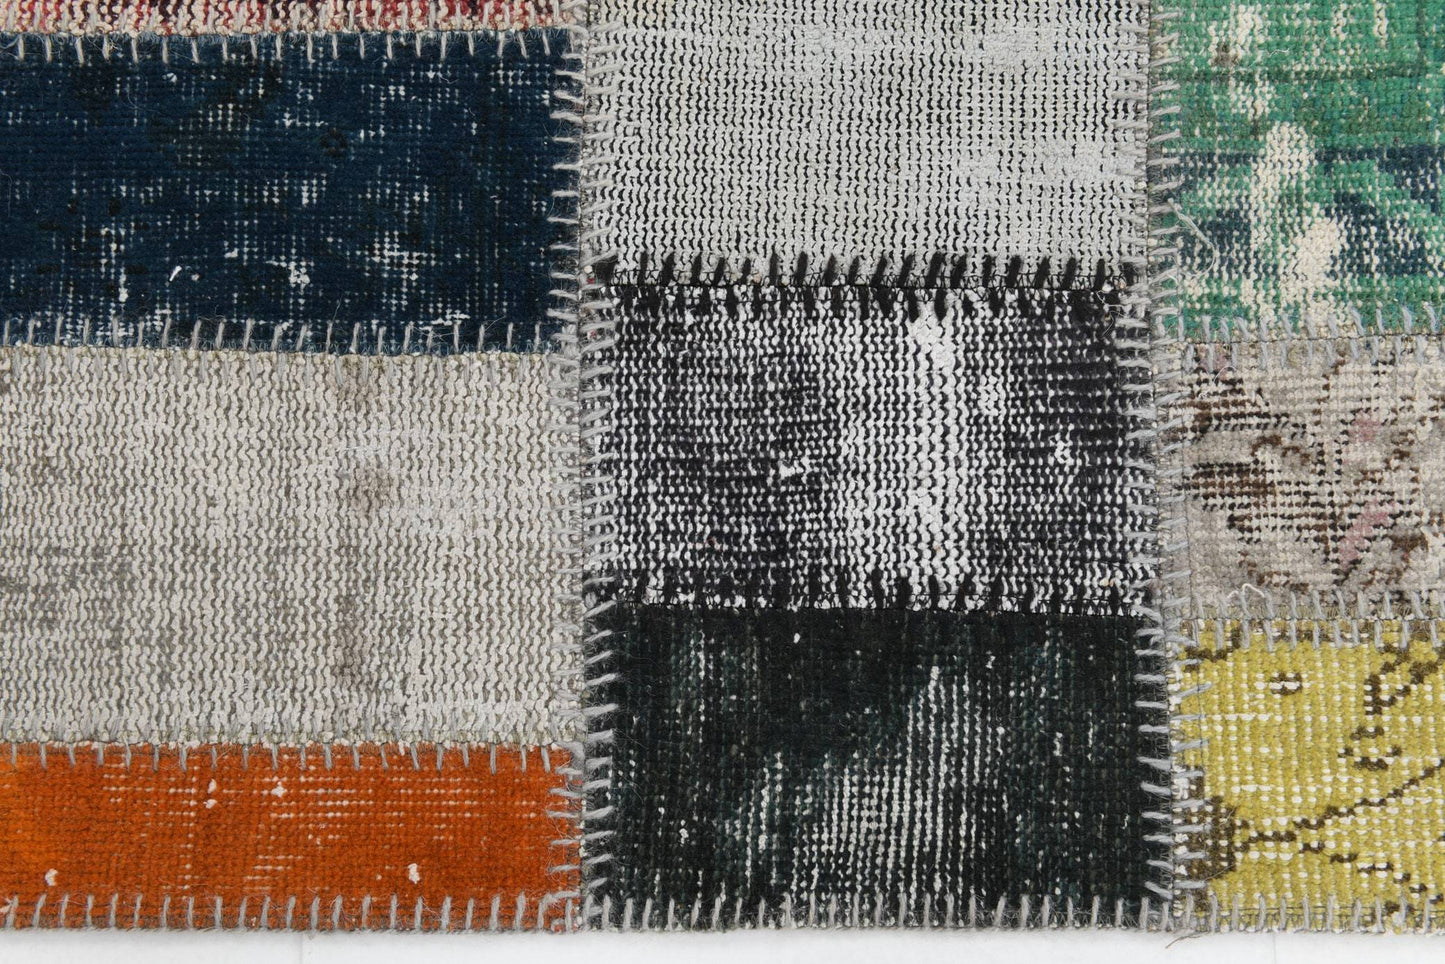 3' x 5' Multi Color Turkish Vintage Patchwork Rug  |  RugReform